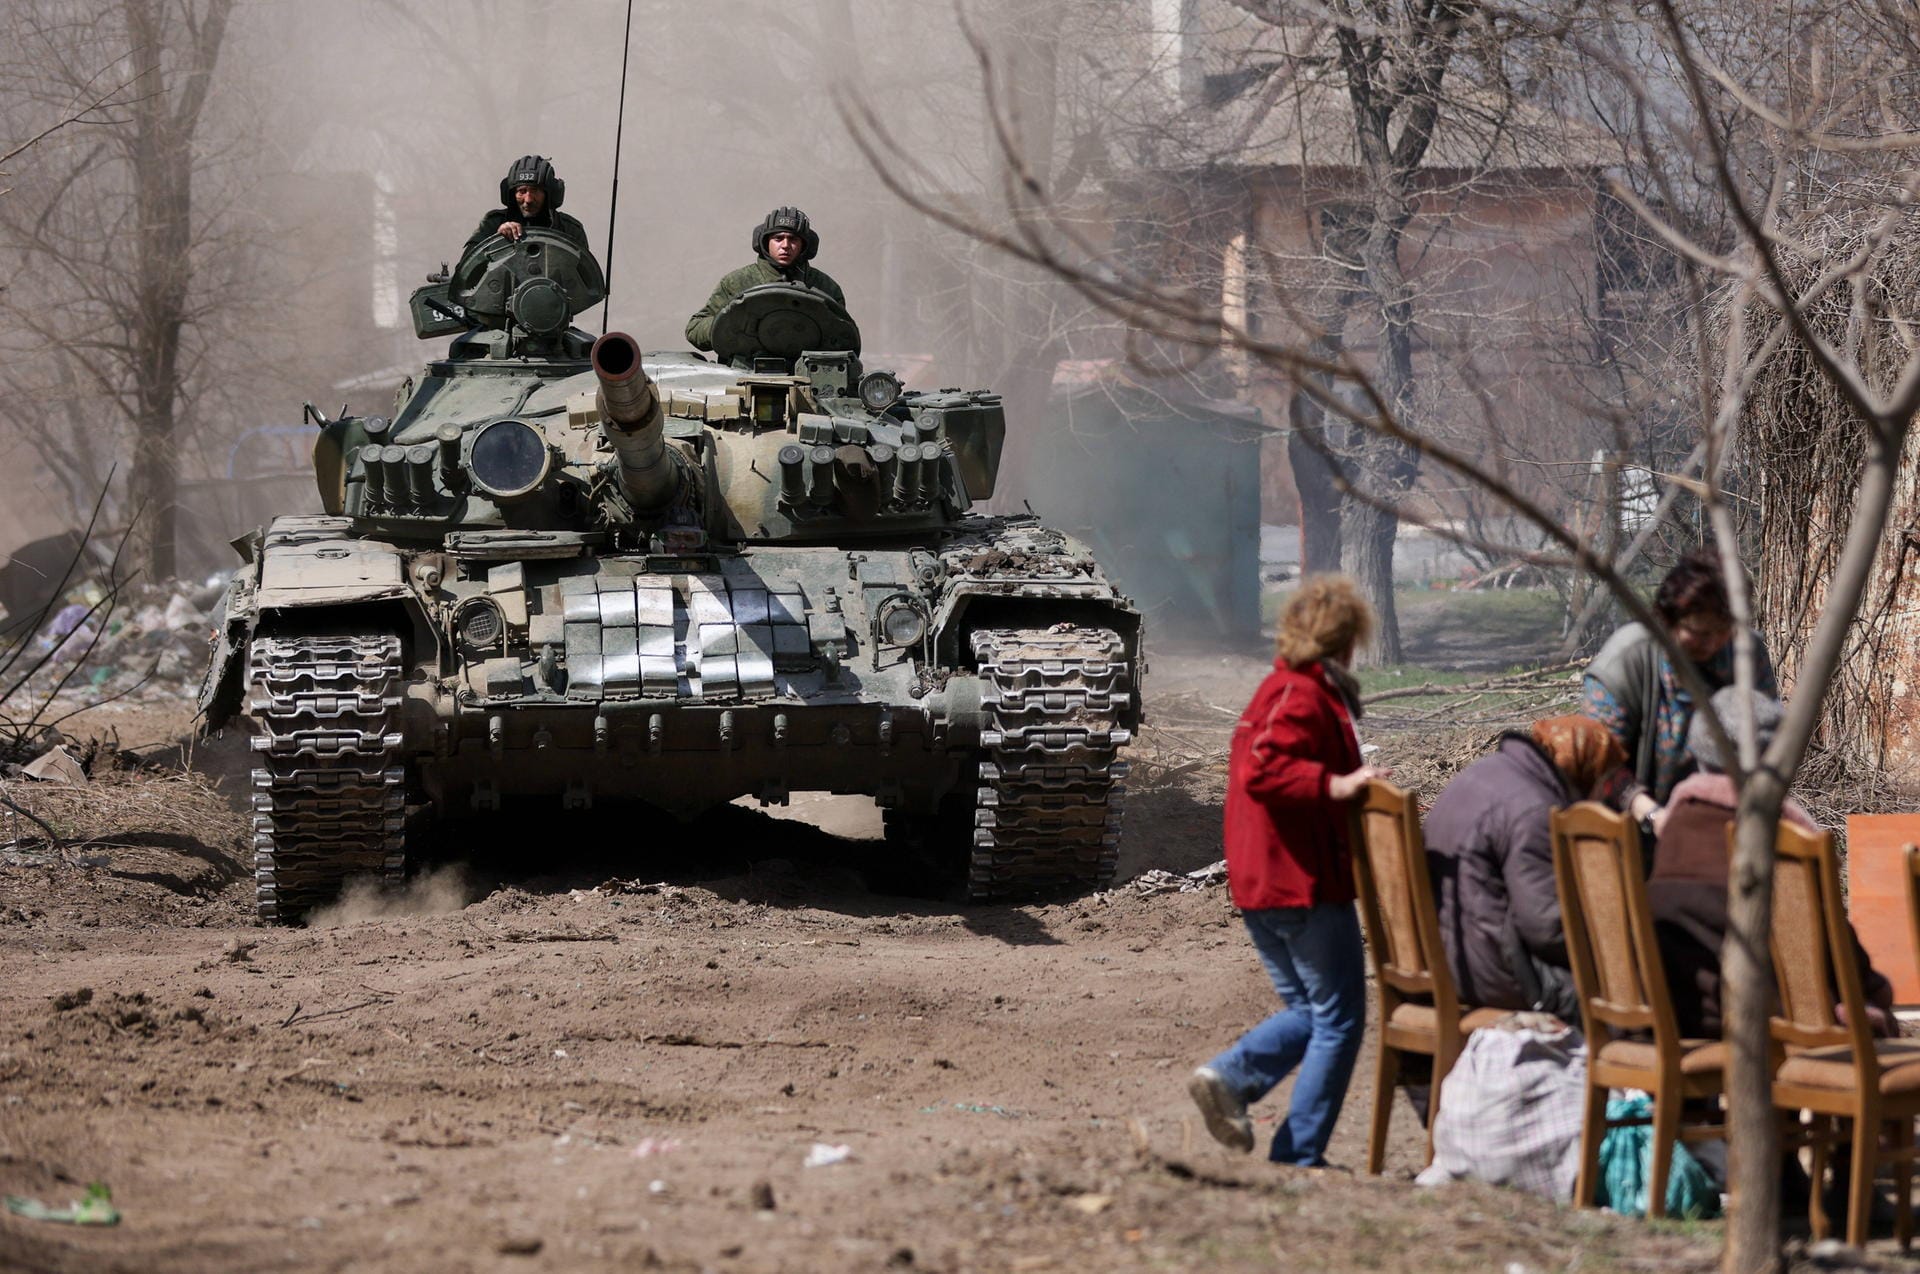 Am 11. April erklären die verbliebenen ukrainischen Streitkräfte in Mariupol, die "letzte Schlacht" stehe bevor, da die Munition zur Neige gehe. Selenskyj erklärt, er gehe von "zehntausenden" Getöteten in Mariupol aus. Die US-Regierung warnt zudem davor, dass Russland "chemische Kampfstoffe einsetzen könnte".